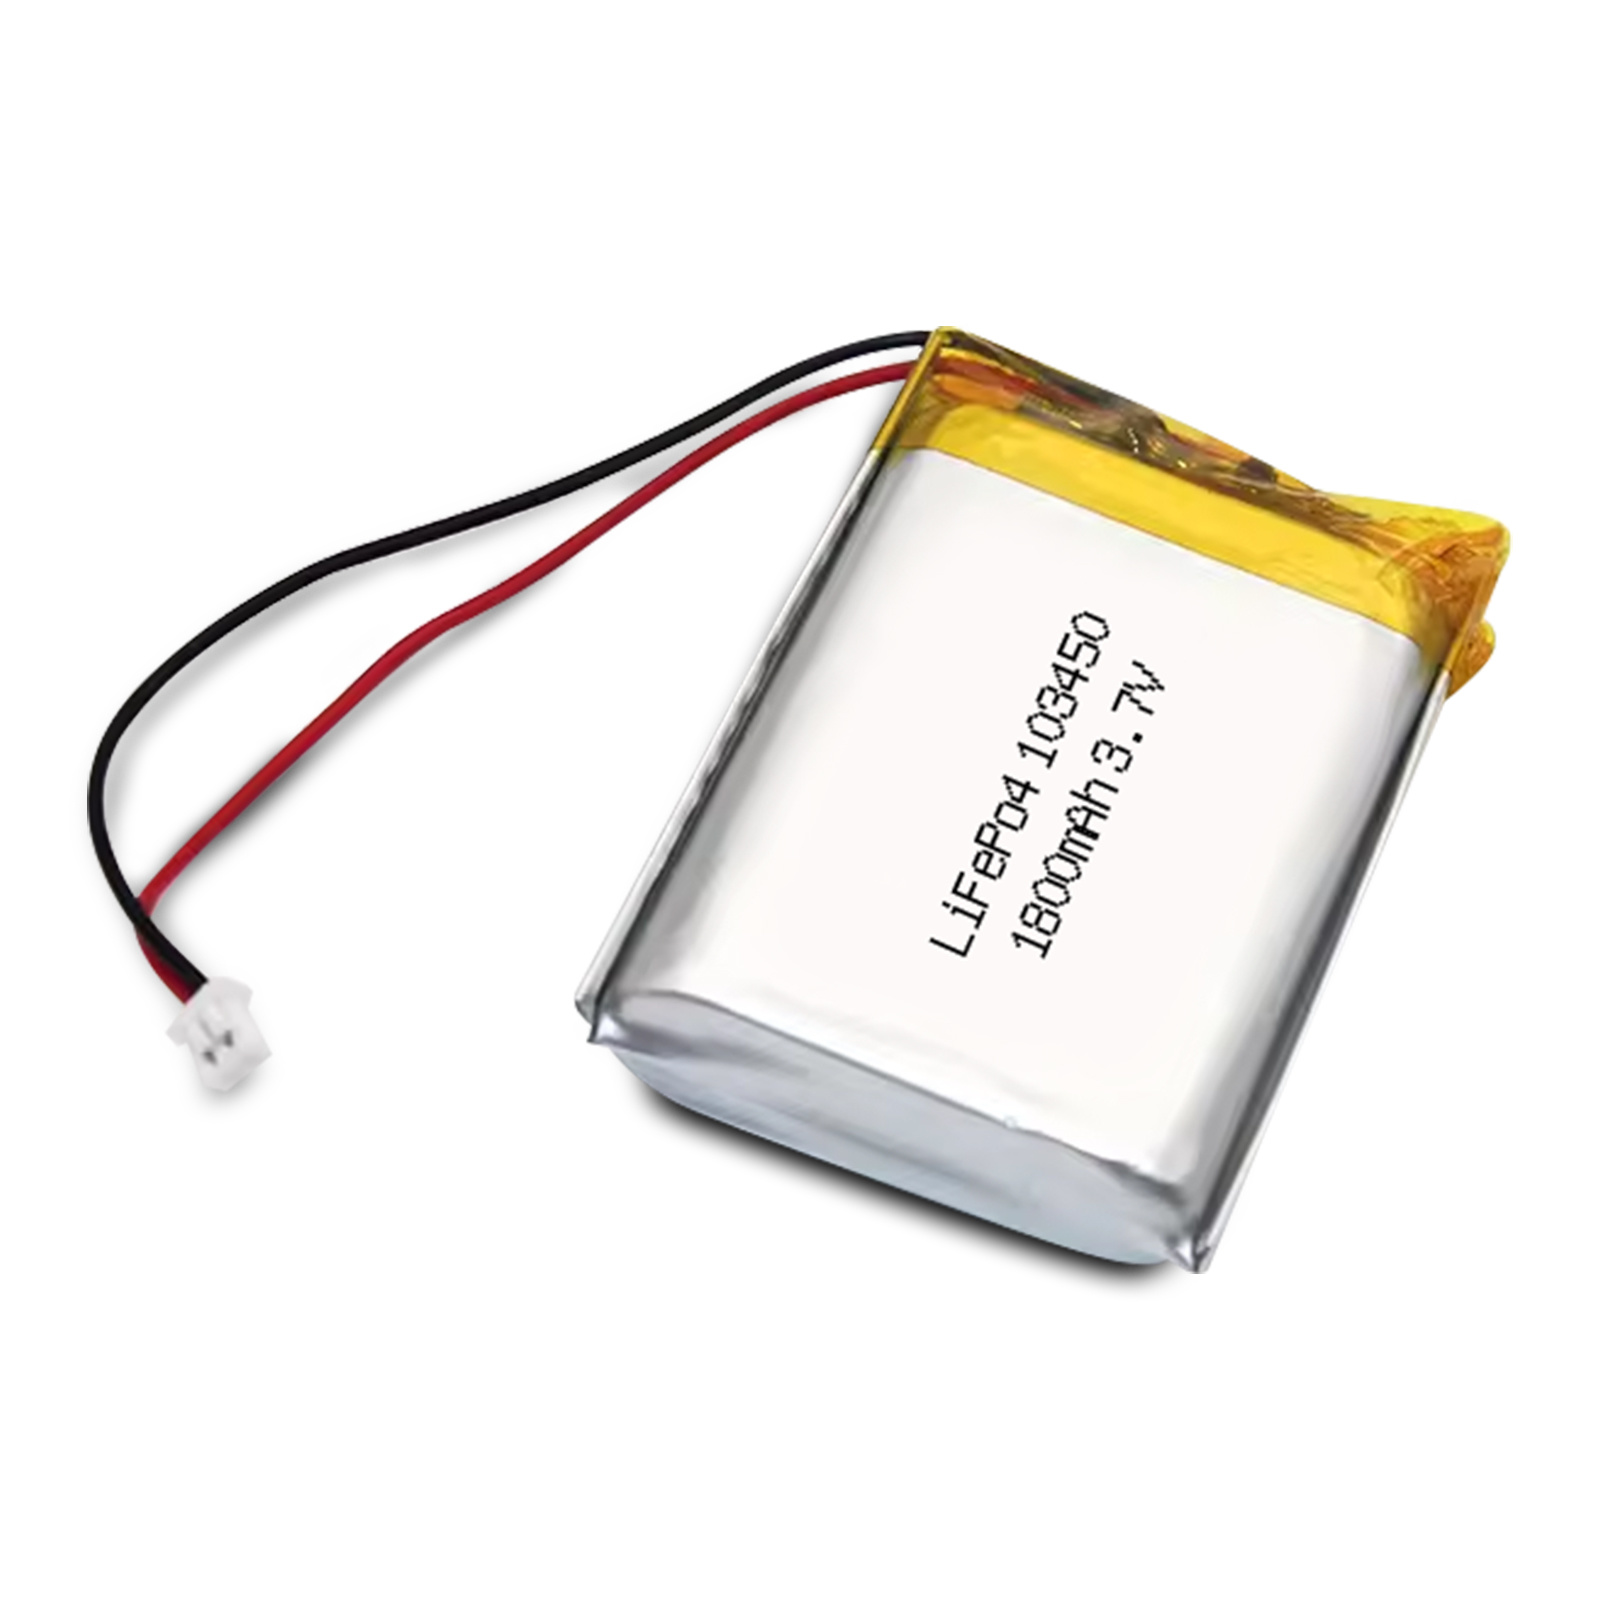 劲鑫 103450 3.7v 1000mah 磷酸铁锂电池 用于 PS4 Controller CUH-ZCT1 Series DIY 3.7-5V Electronic Product